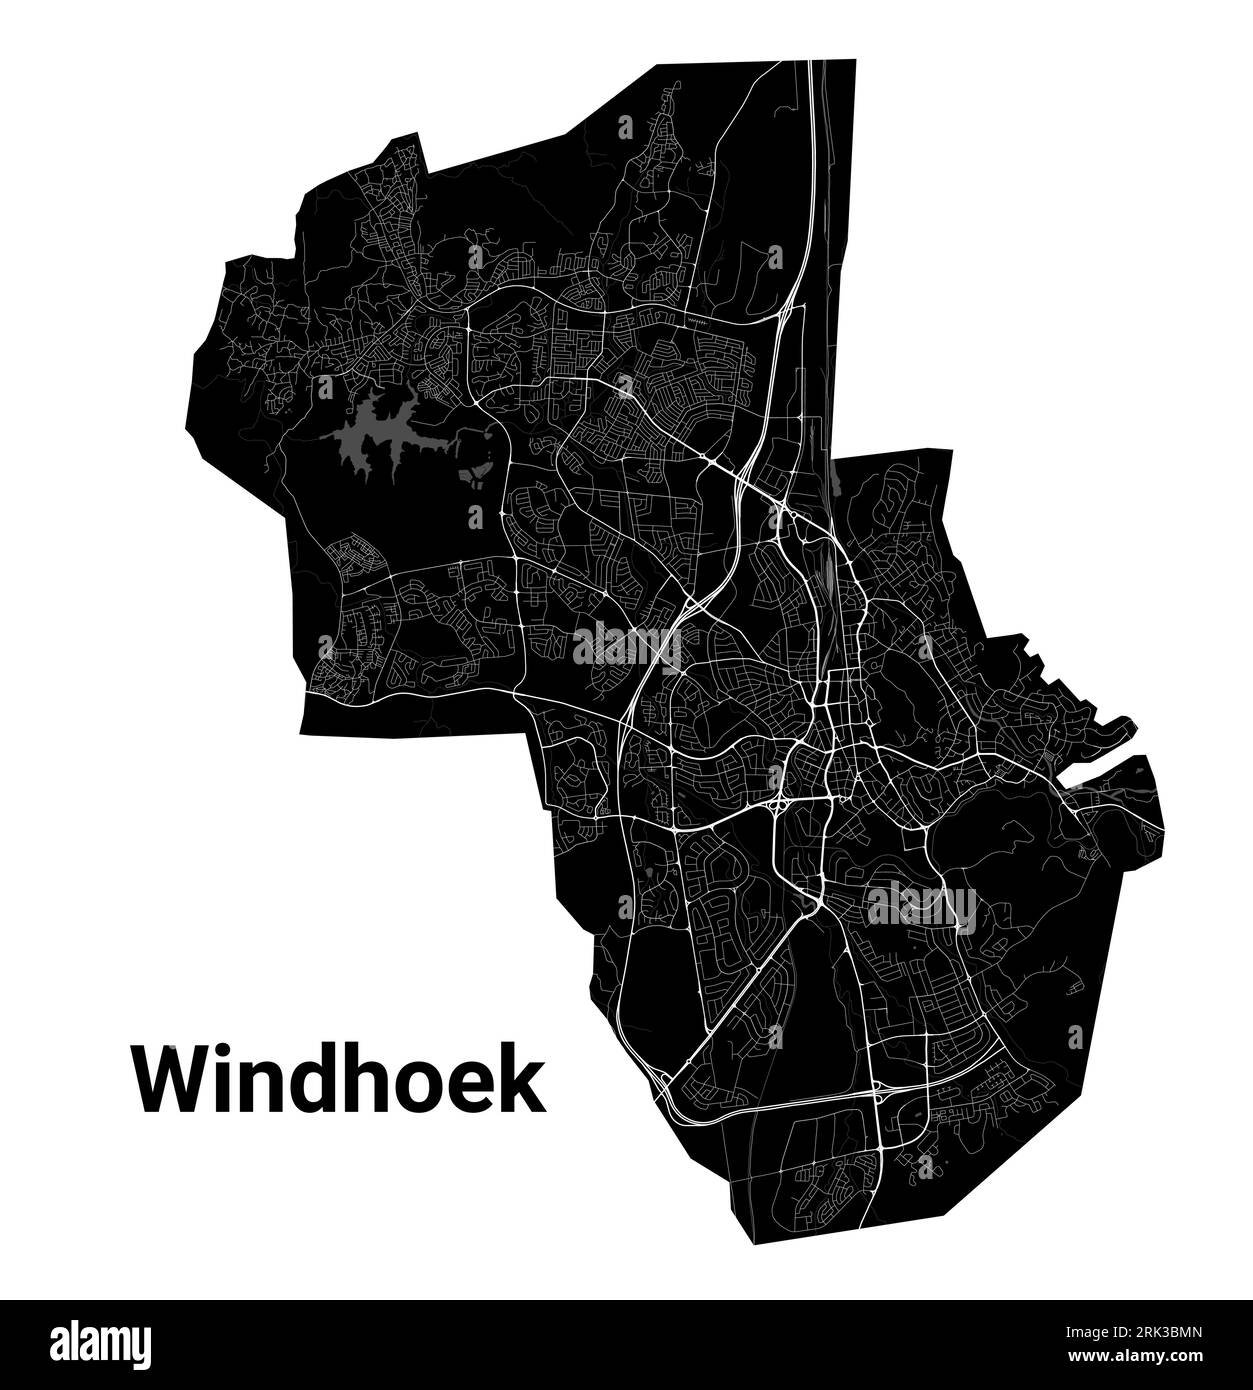 Windhoek Stadtplan, Hauptstadt Namibias. Städtische Verwaltungskarte in Schwarz-weiß mit Flüssen und Straßen, Parks und Eisenbahnen. Vektorillustratio Stock Vektor